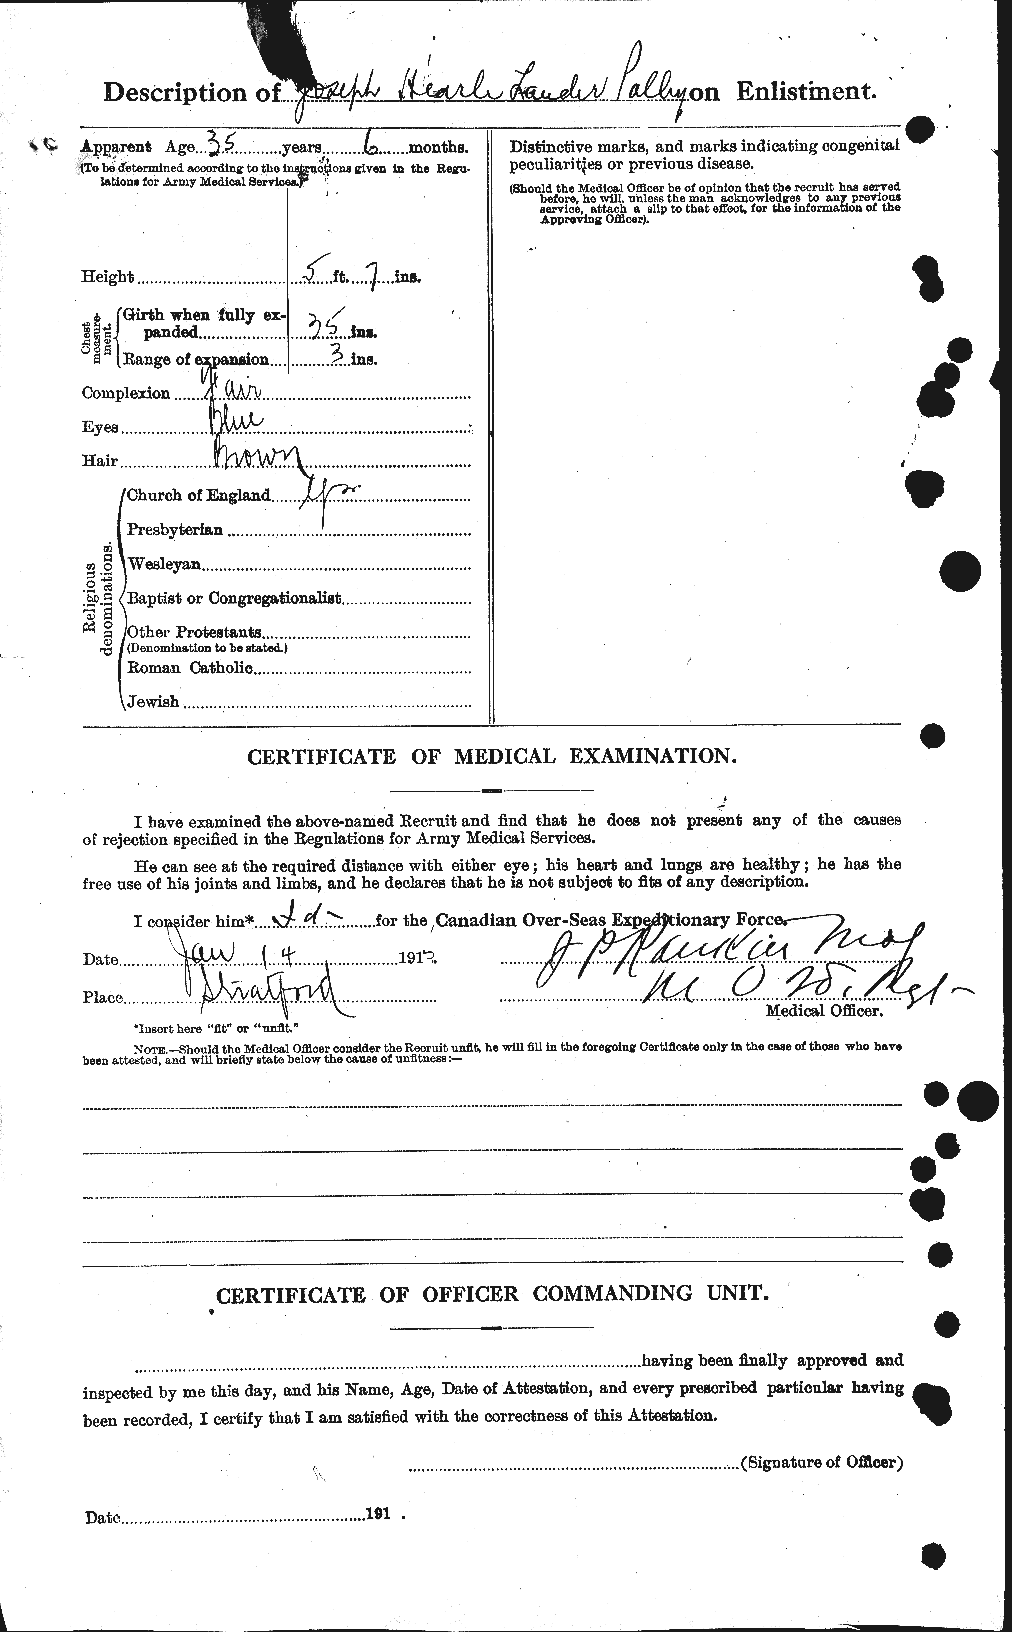 Dossiers du Personnel de la Première Guerre mondiale - CEC 579828b